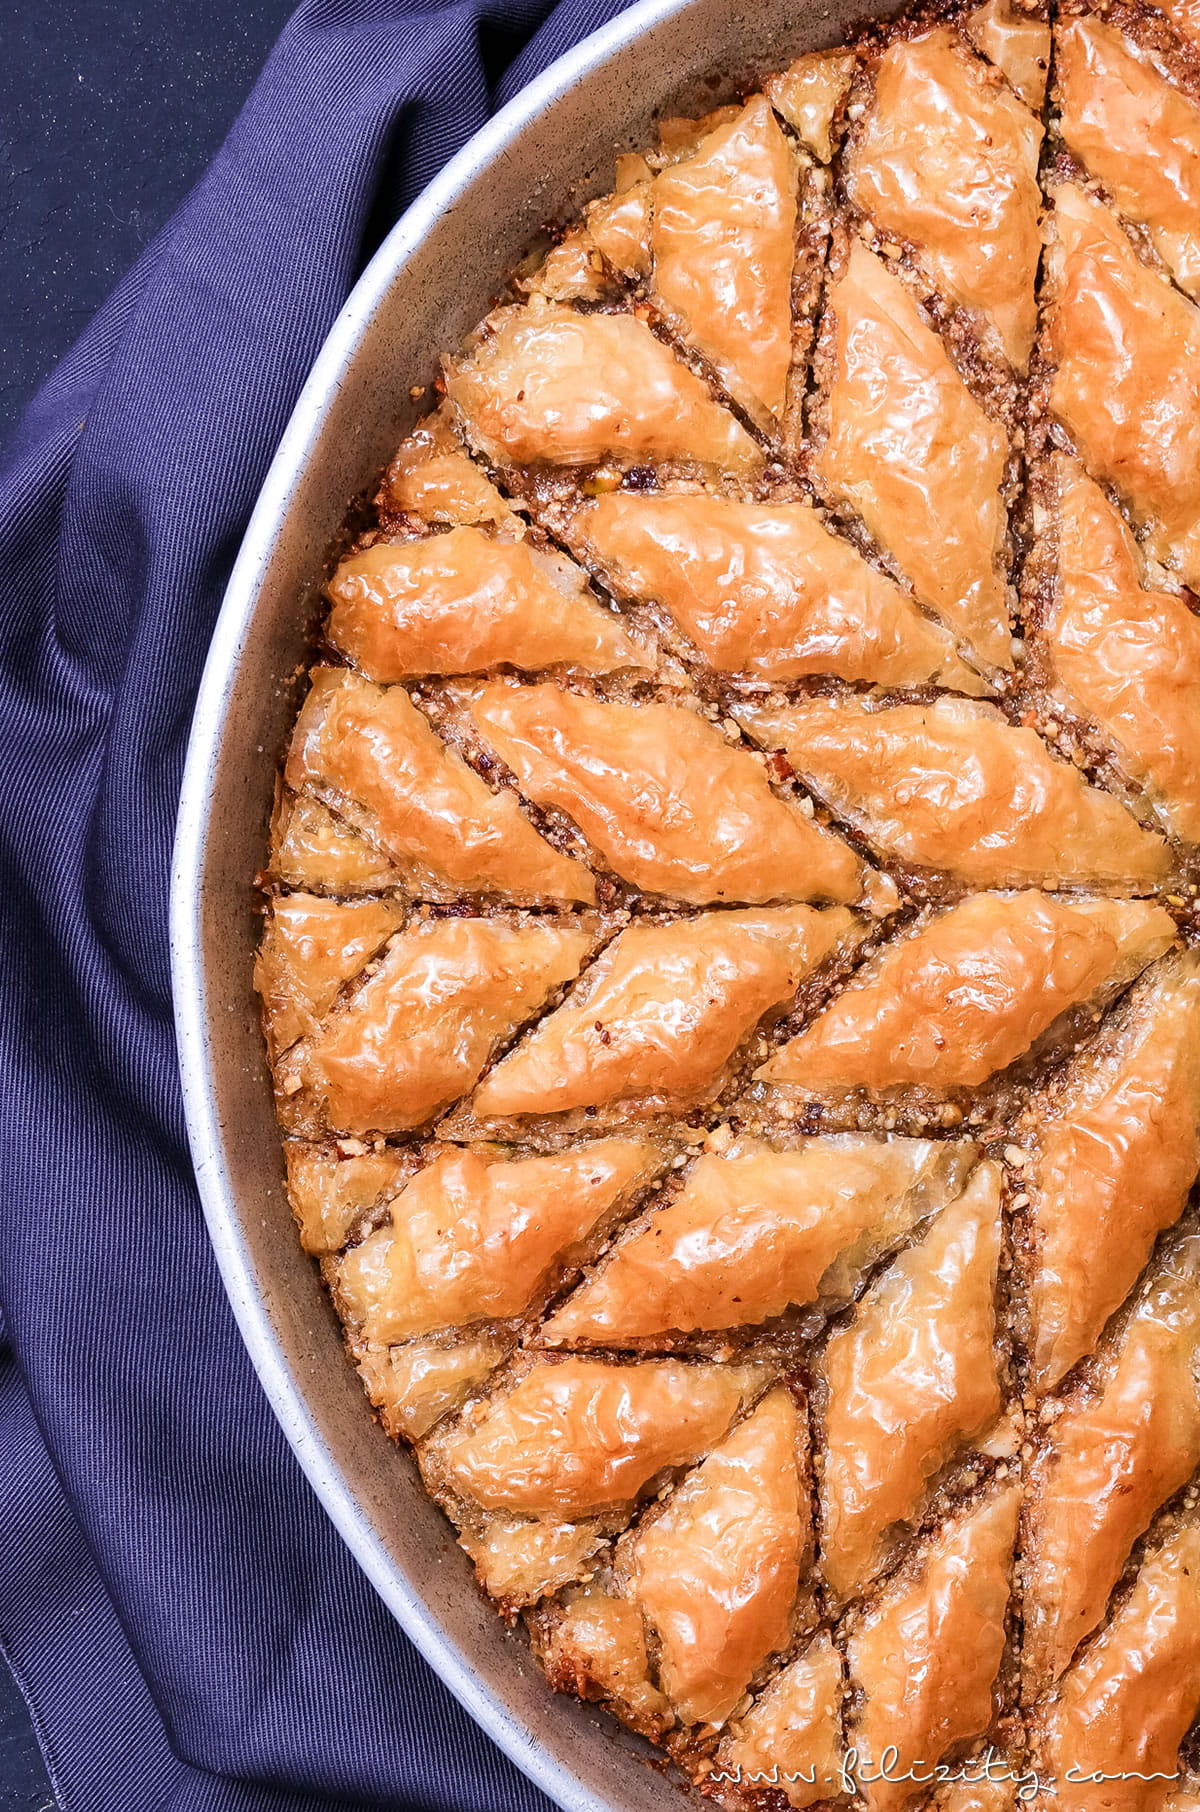 Orientalische Süßspeise: Baklava selber machen | Blätterteig-Gebäck in Zuckersirup | Filizity.com | Food-Blog aus dem Rheinland #baklava #dessert #orientalisch